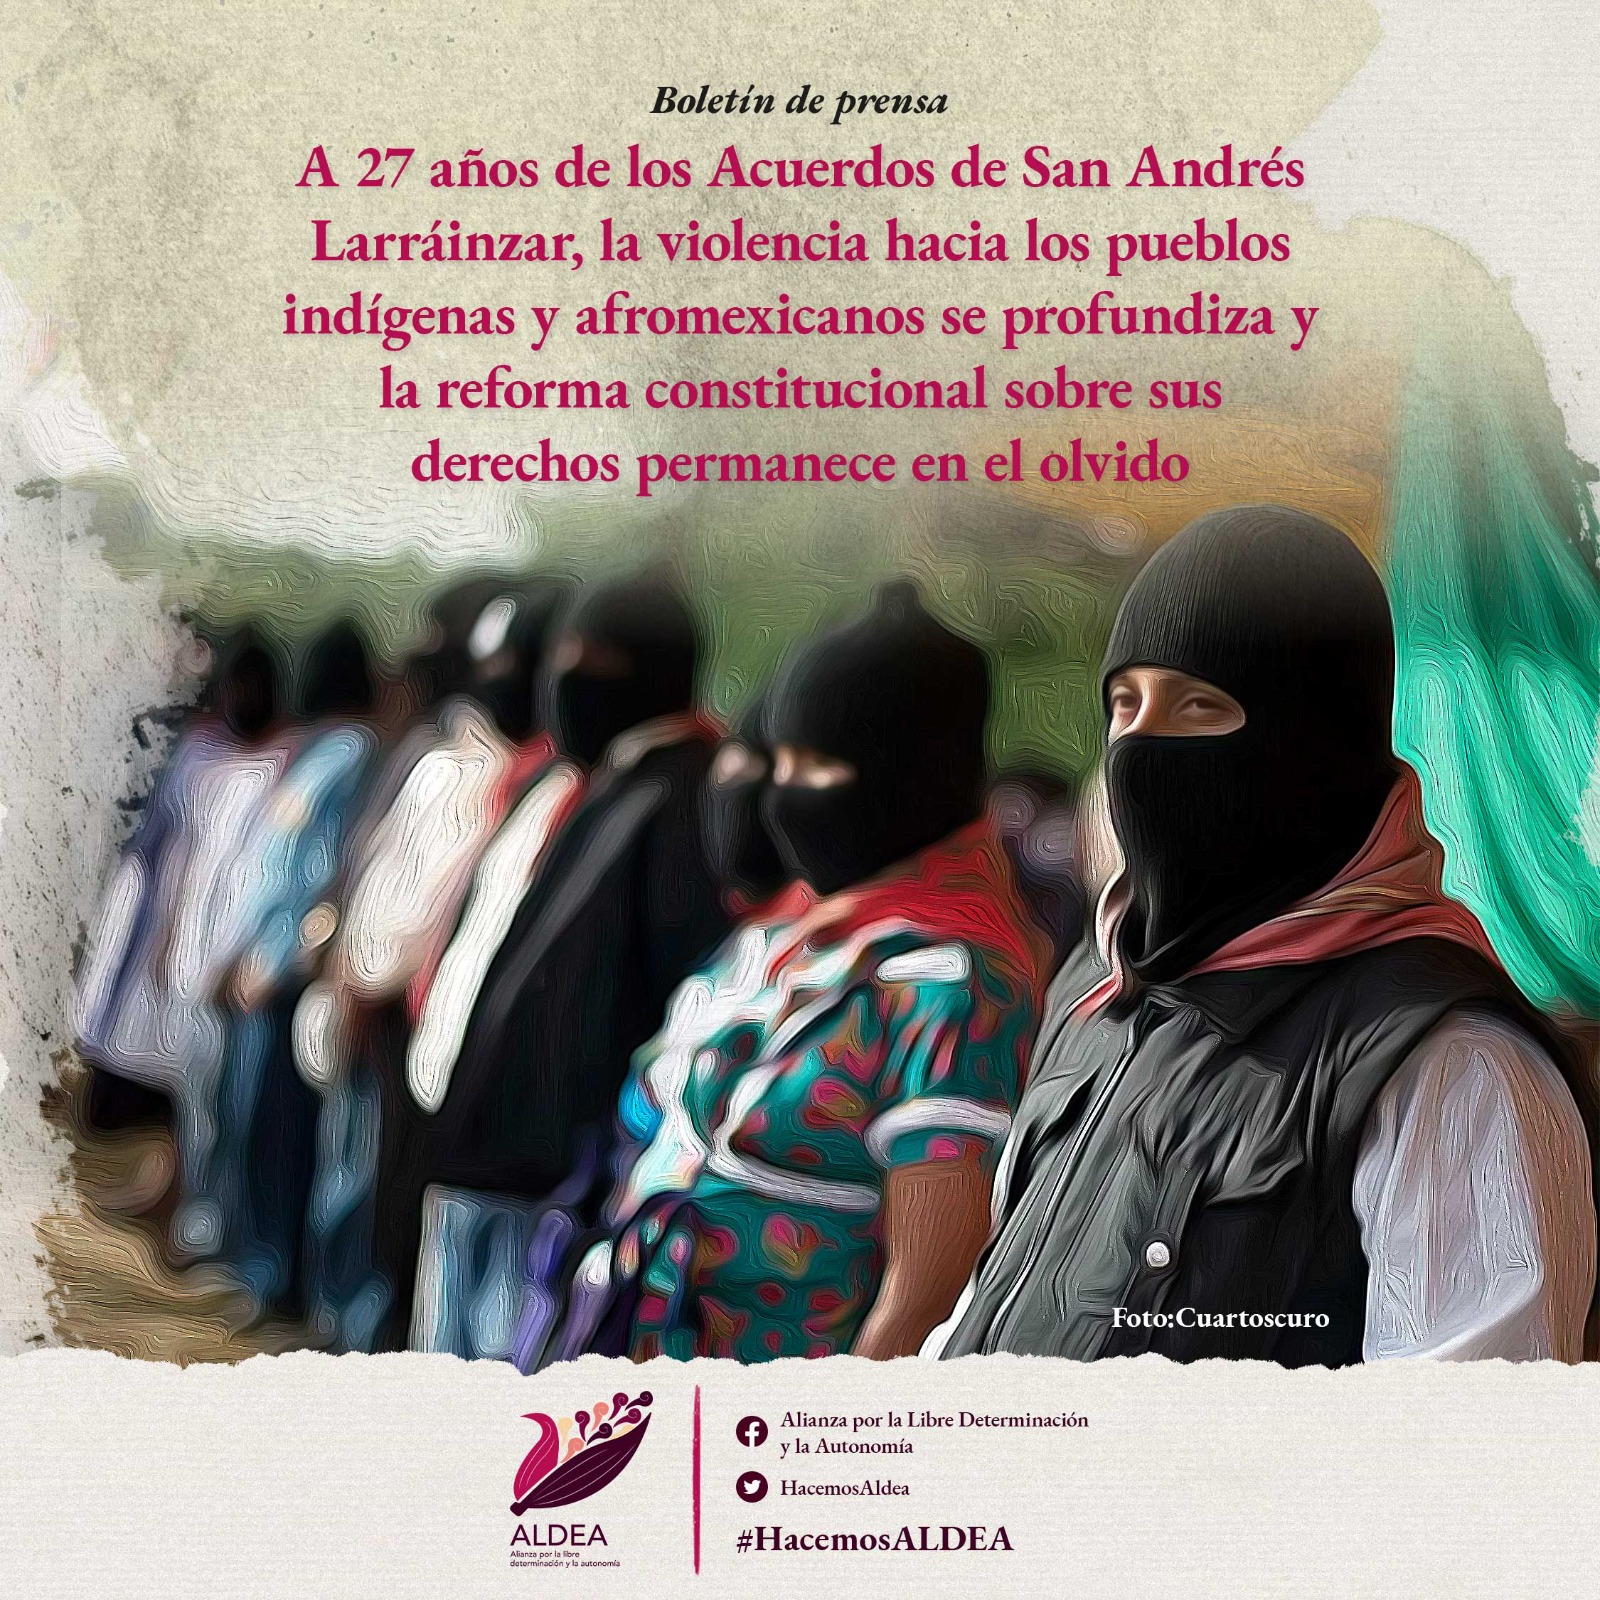 A 27 años de los acuerdos de San Andrés Larráinzar, la violencia hacia los pueblos indígenas y afromexicanos se profundiza y la reforma constitucional sobre sus derechos permanece en el olvido